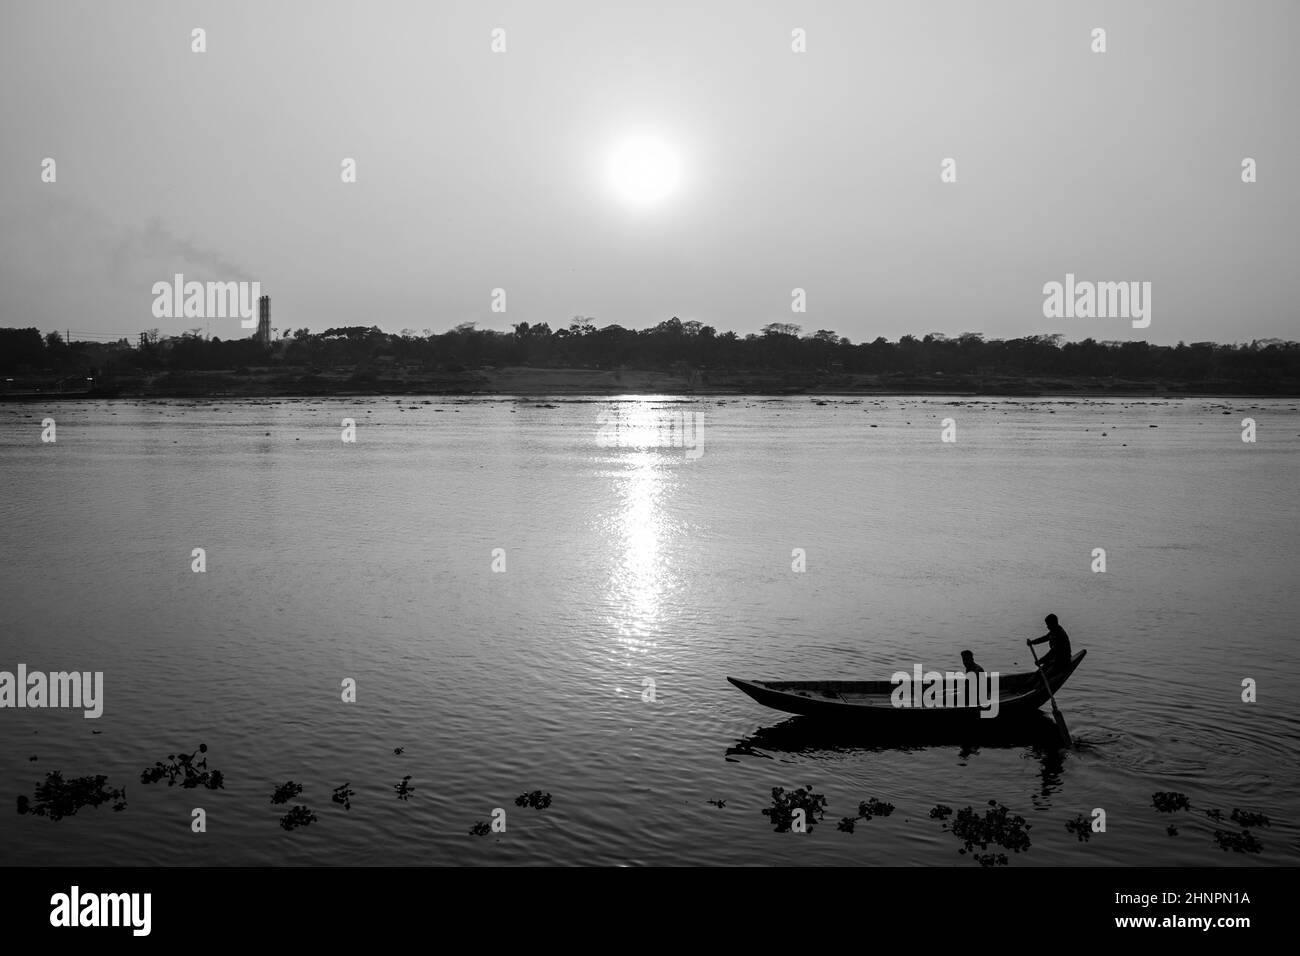 Sonnenuntergangsfotografie auf dem Fluss im Winter 2022. Dieses Bild wurde von mir am 17. Januar 2022 vom Doleswori-Fluss, Bangladesch, Südasien, aufgenommen. Stockfoto